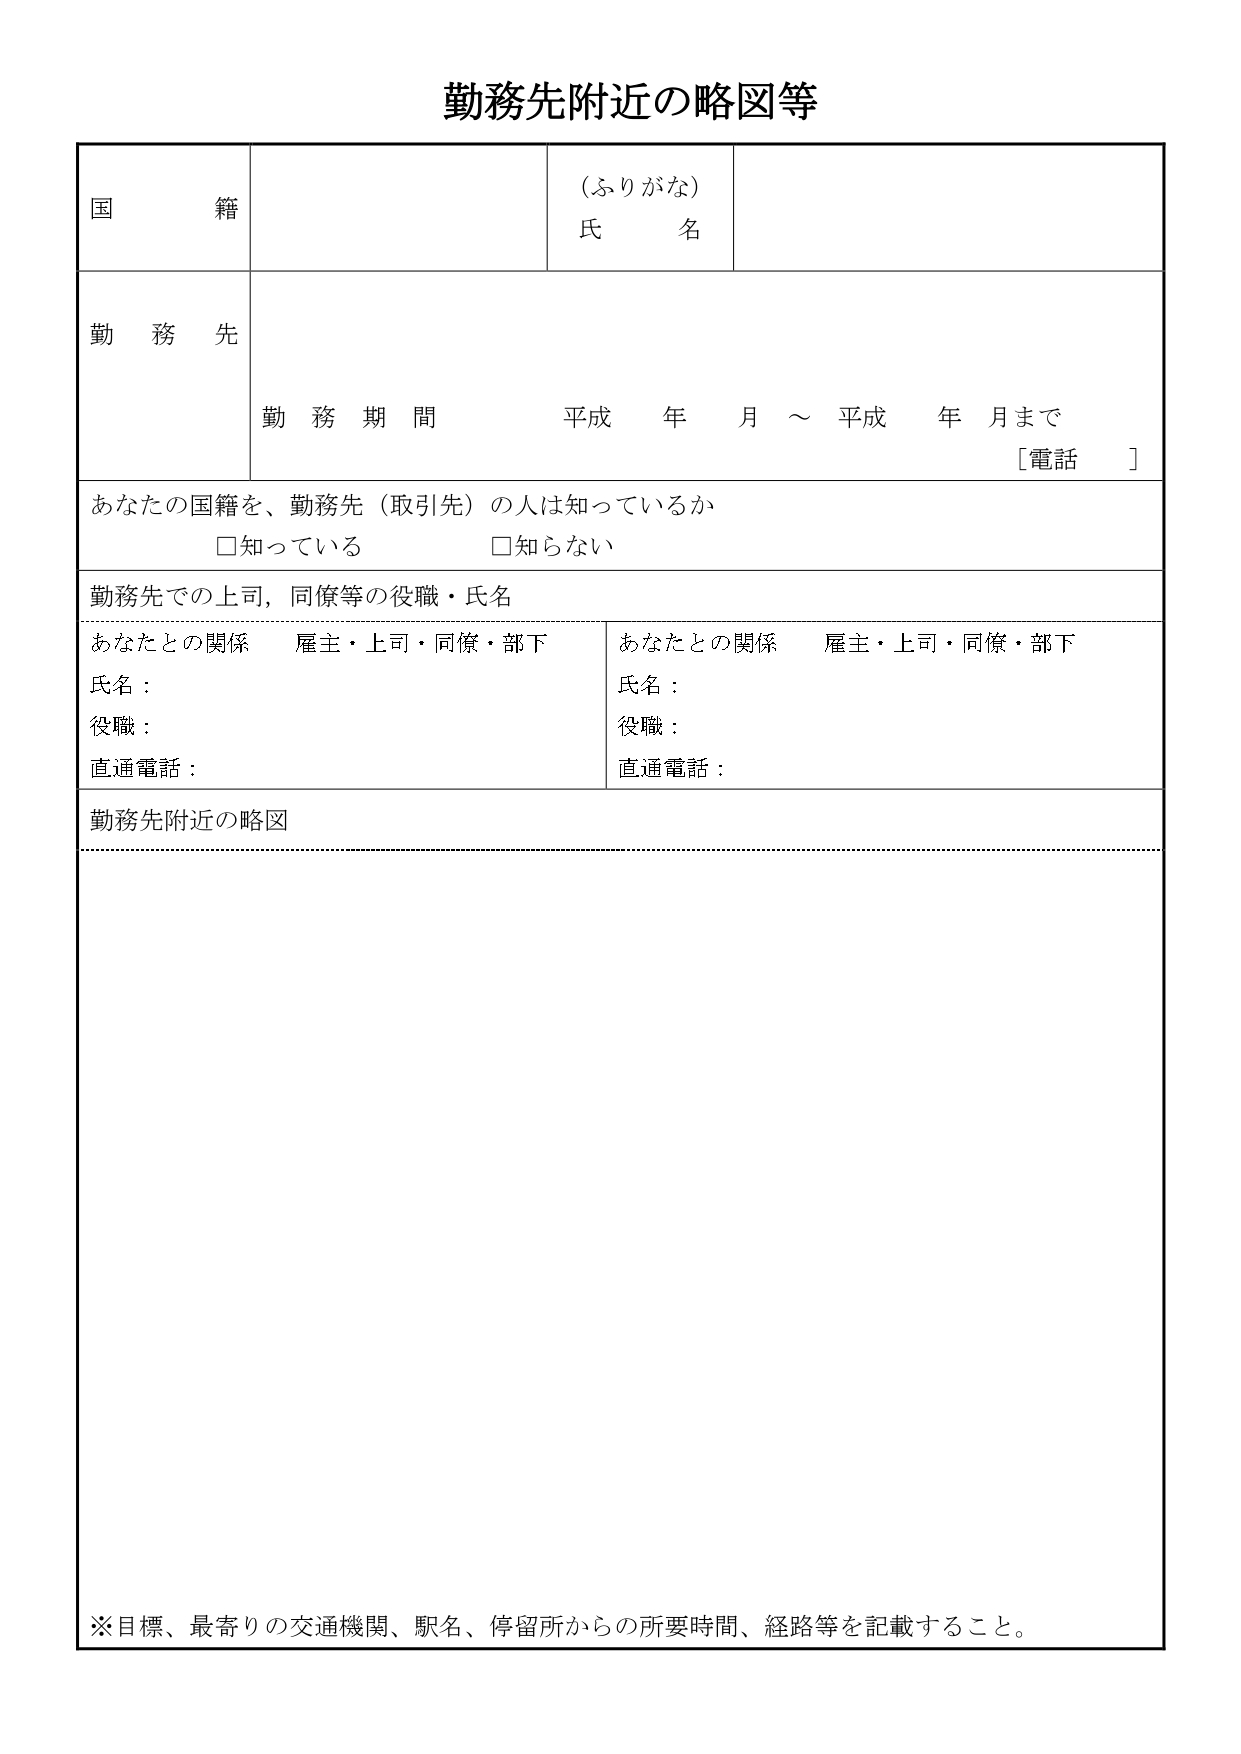 勤務先附近の略図等の書き方 横浜帰化申請オフィス